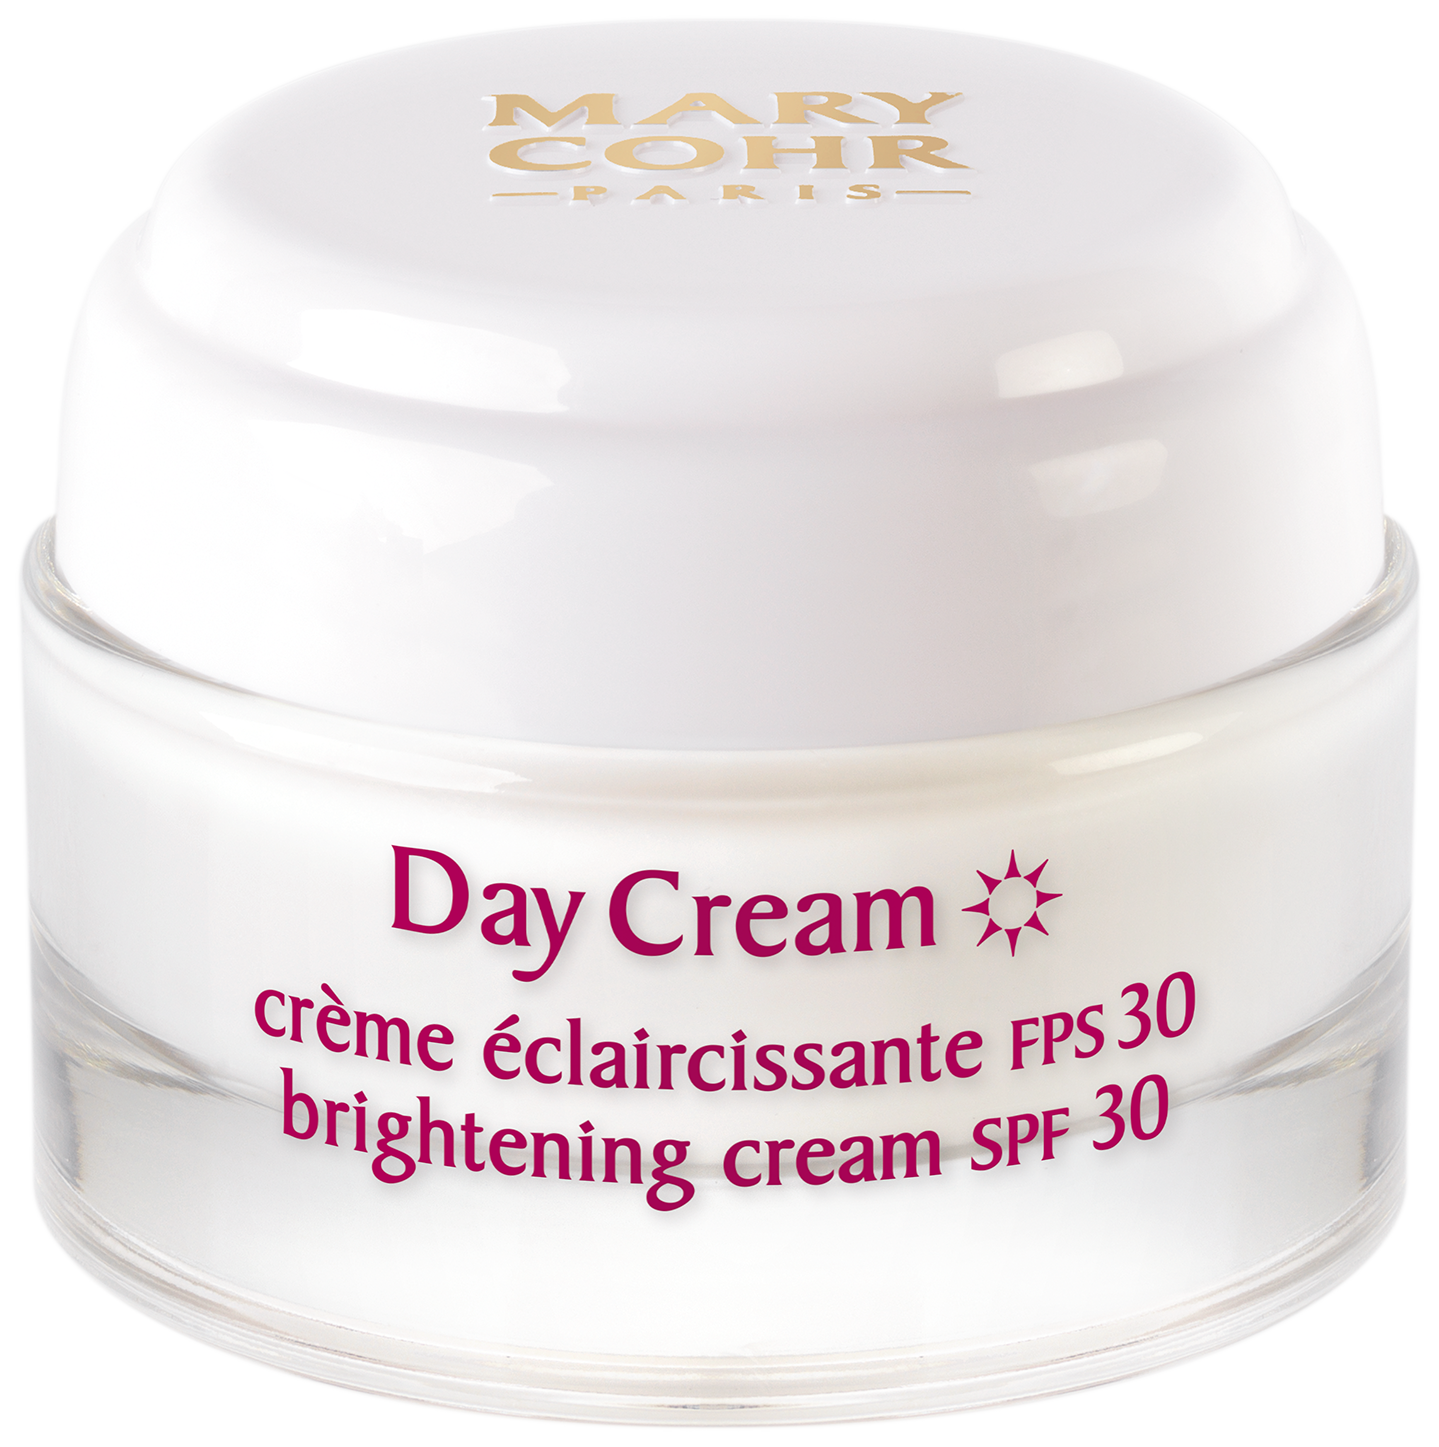 30 days Day Cream Brightening